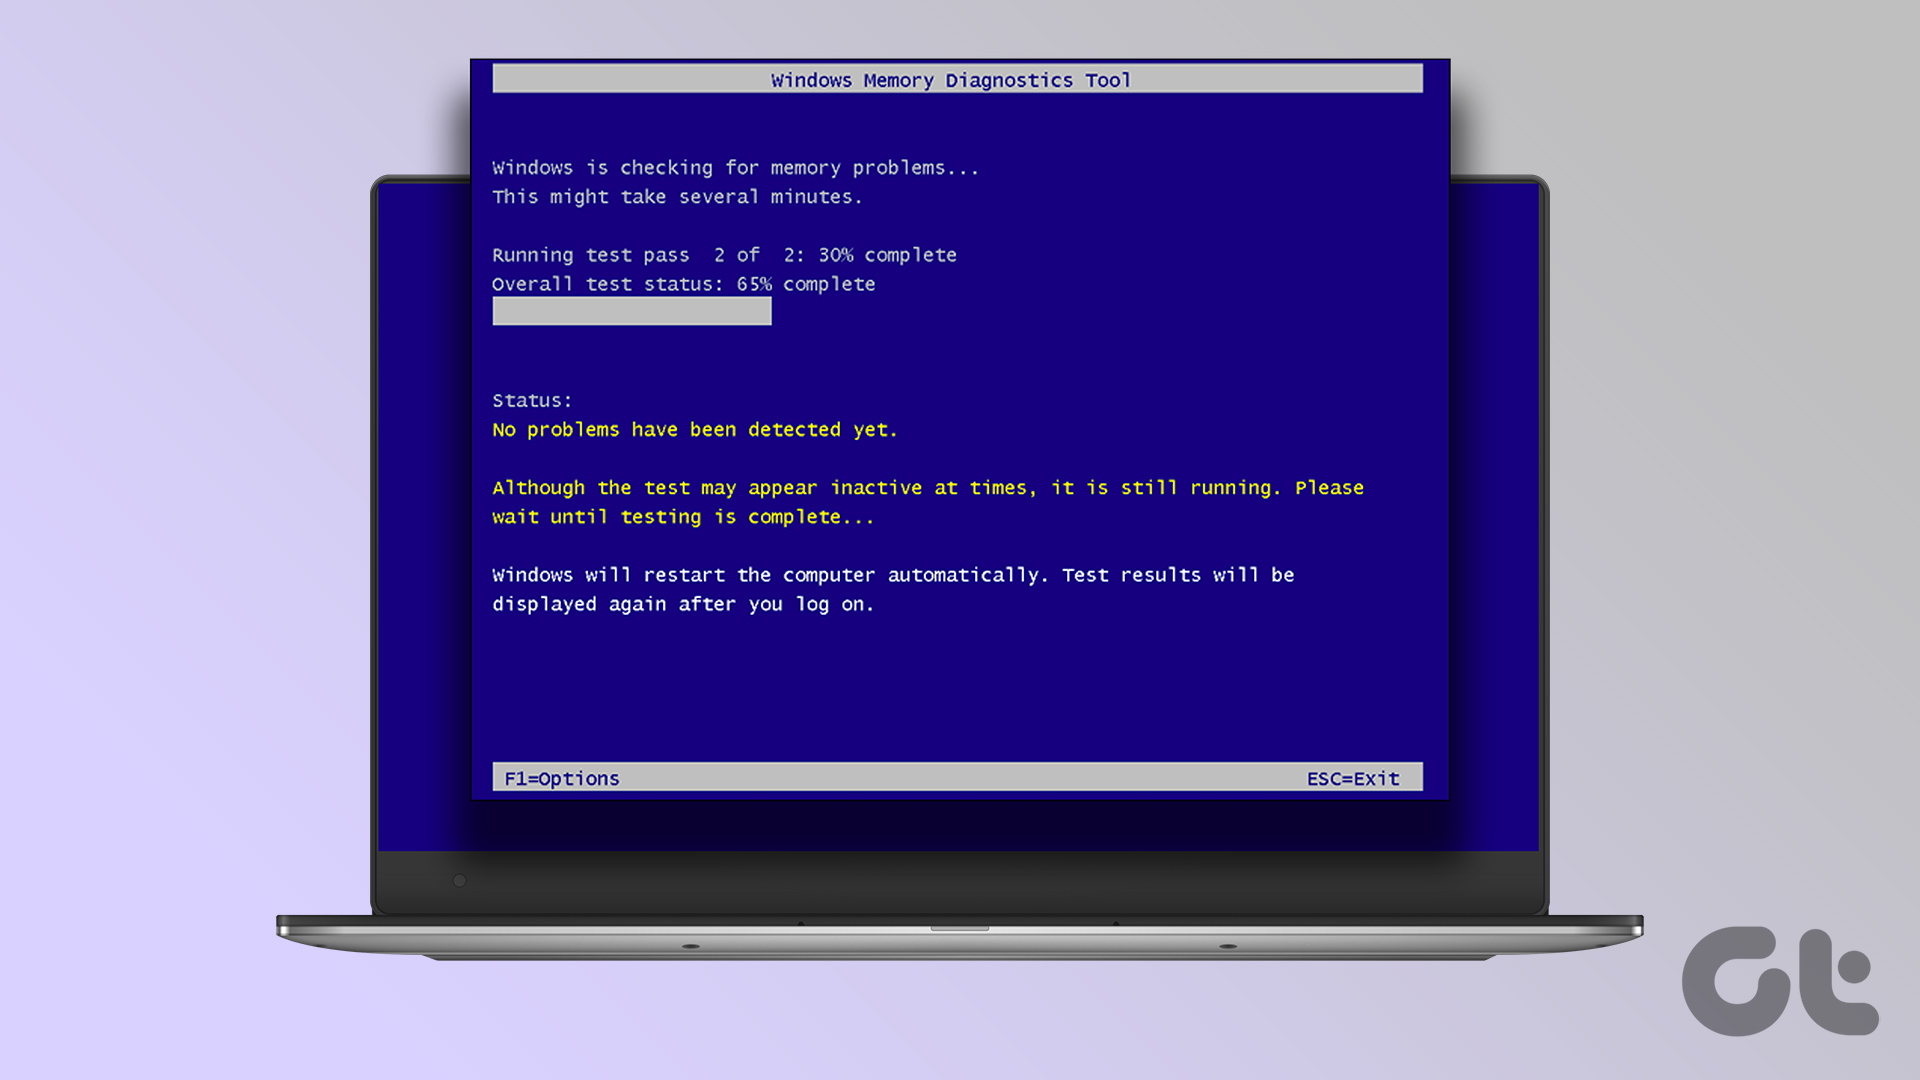 Use Windows Memory Diagnostics Tool to Check For Memory Problems - 48